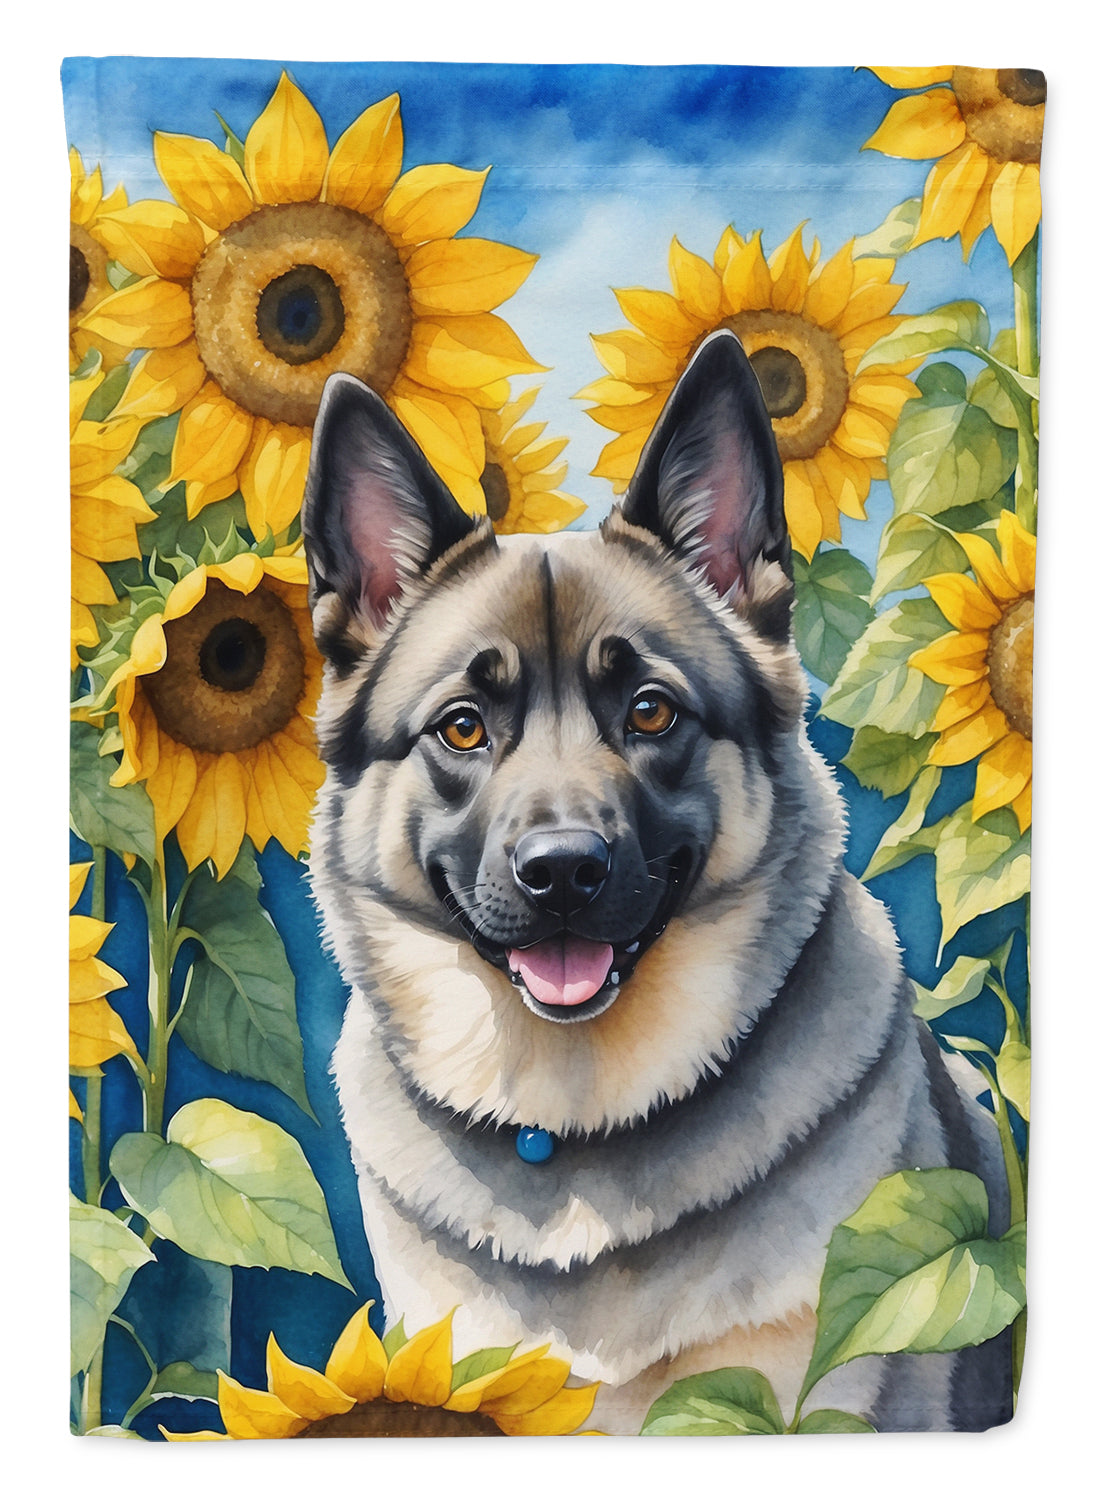 Buy this Norwegian Elkhound in Sunflowers Garden Flag